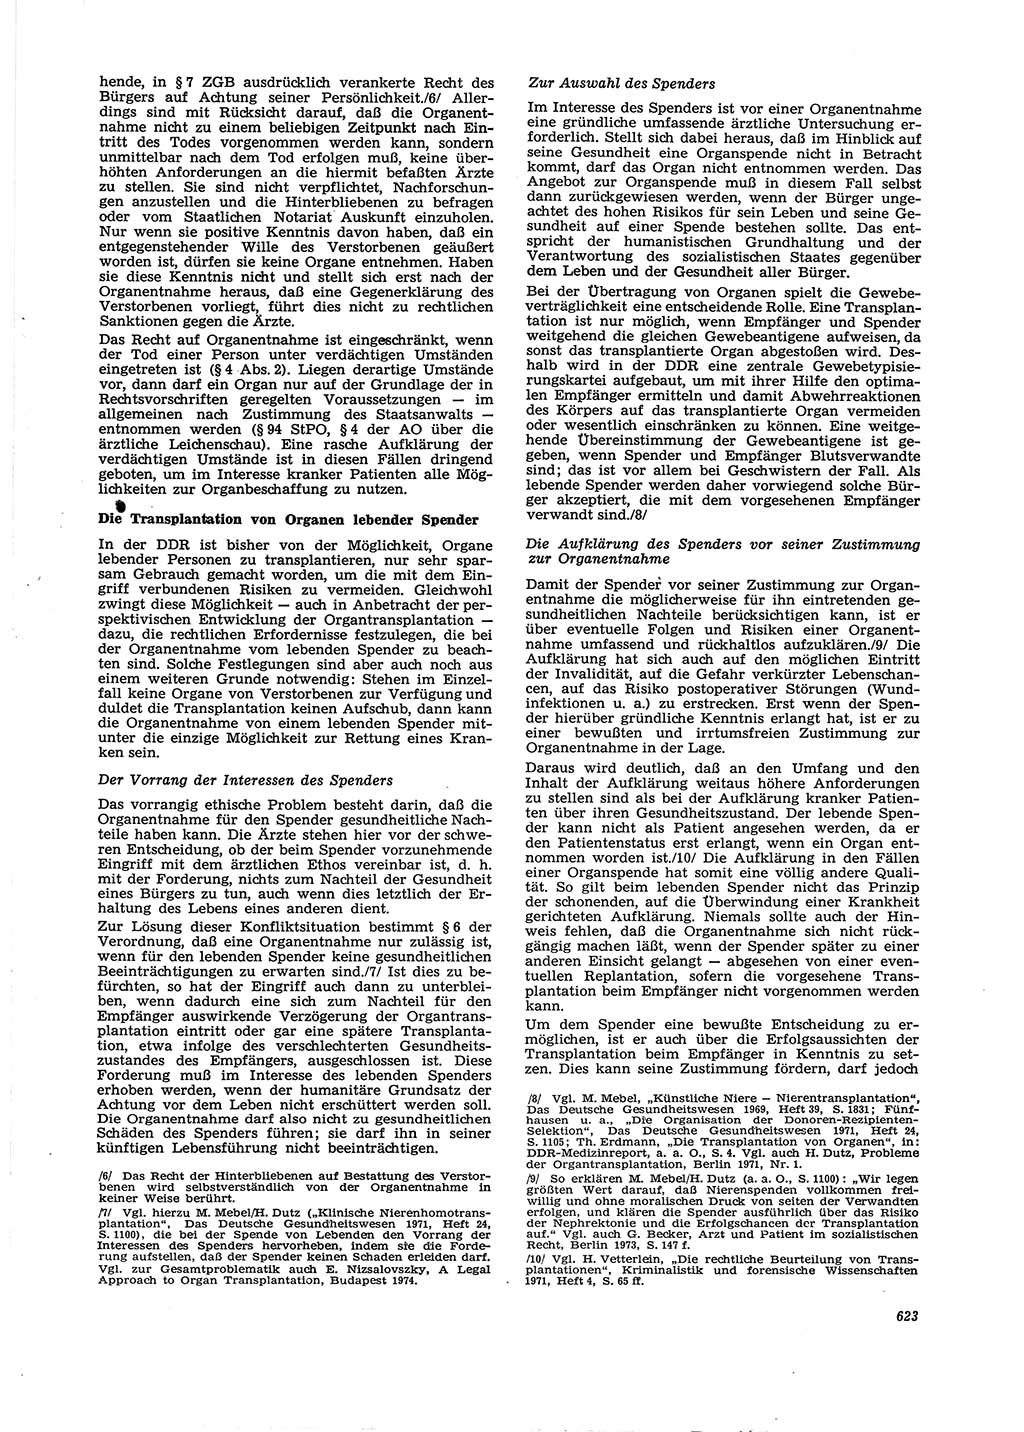 Neue Justiz (NJ), Zeitschrift für Recht und Rechtswissenschaft [Deutsche Demokratische Republik (DDR)], 29. Jahrgang 1975, Seite 623 (NJ DDR 1975, S. 623)